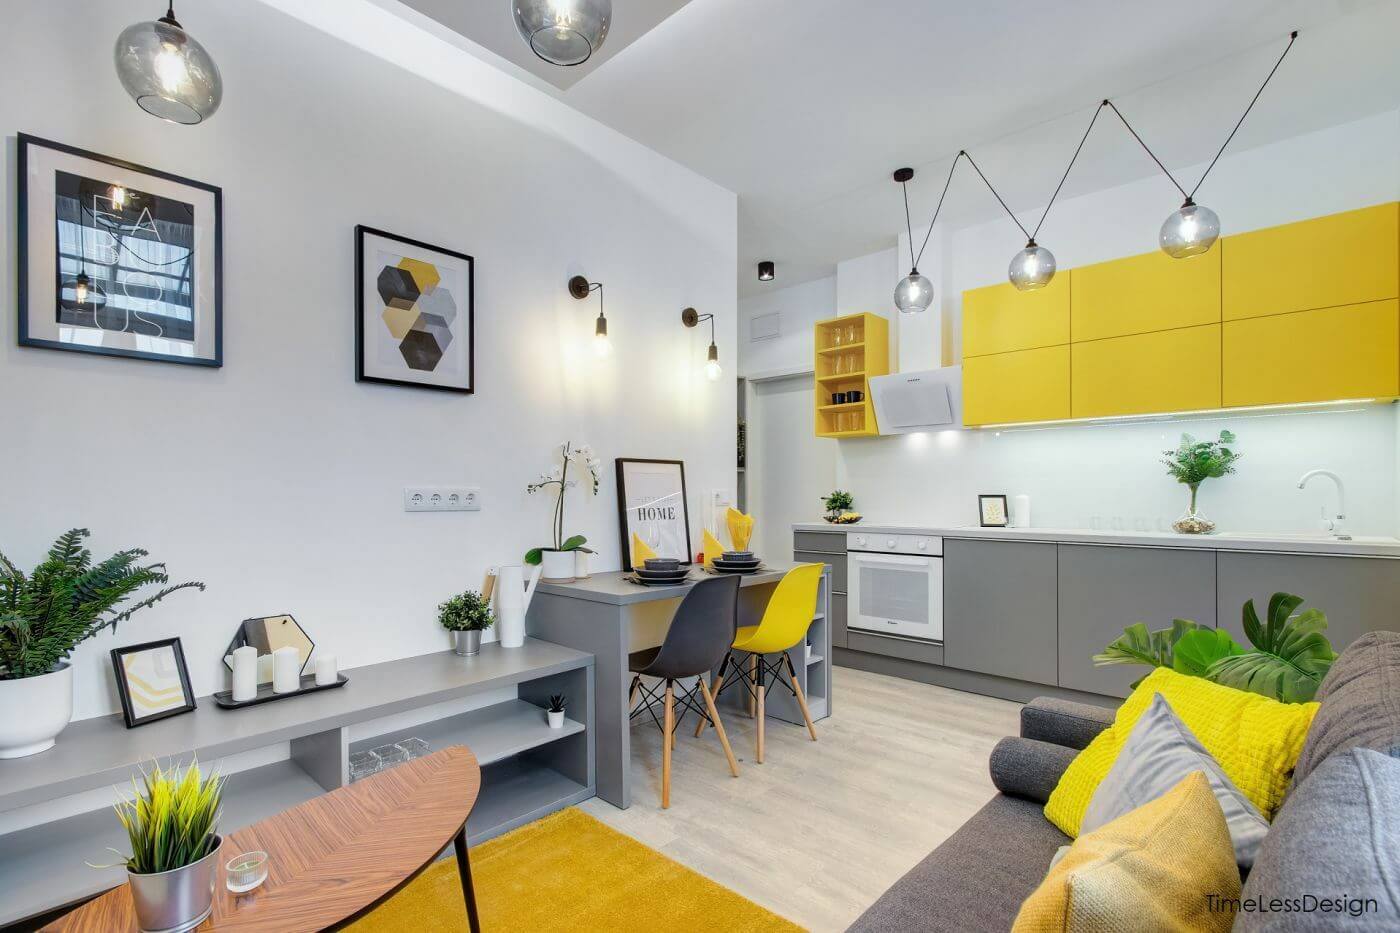 Vitalitást sugárzó 28 m2-es külön hálószobás minilakás a Haris közből sárga és szürke színekkel